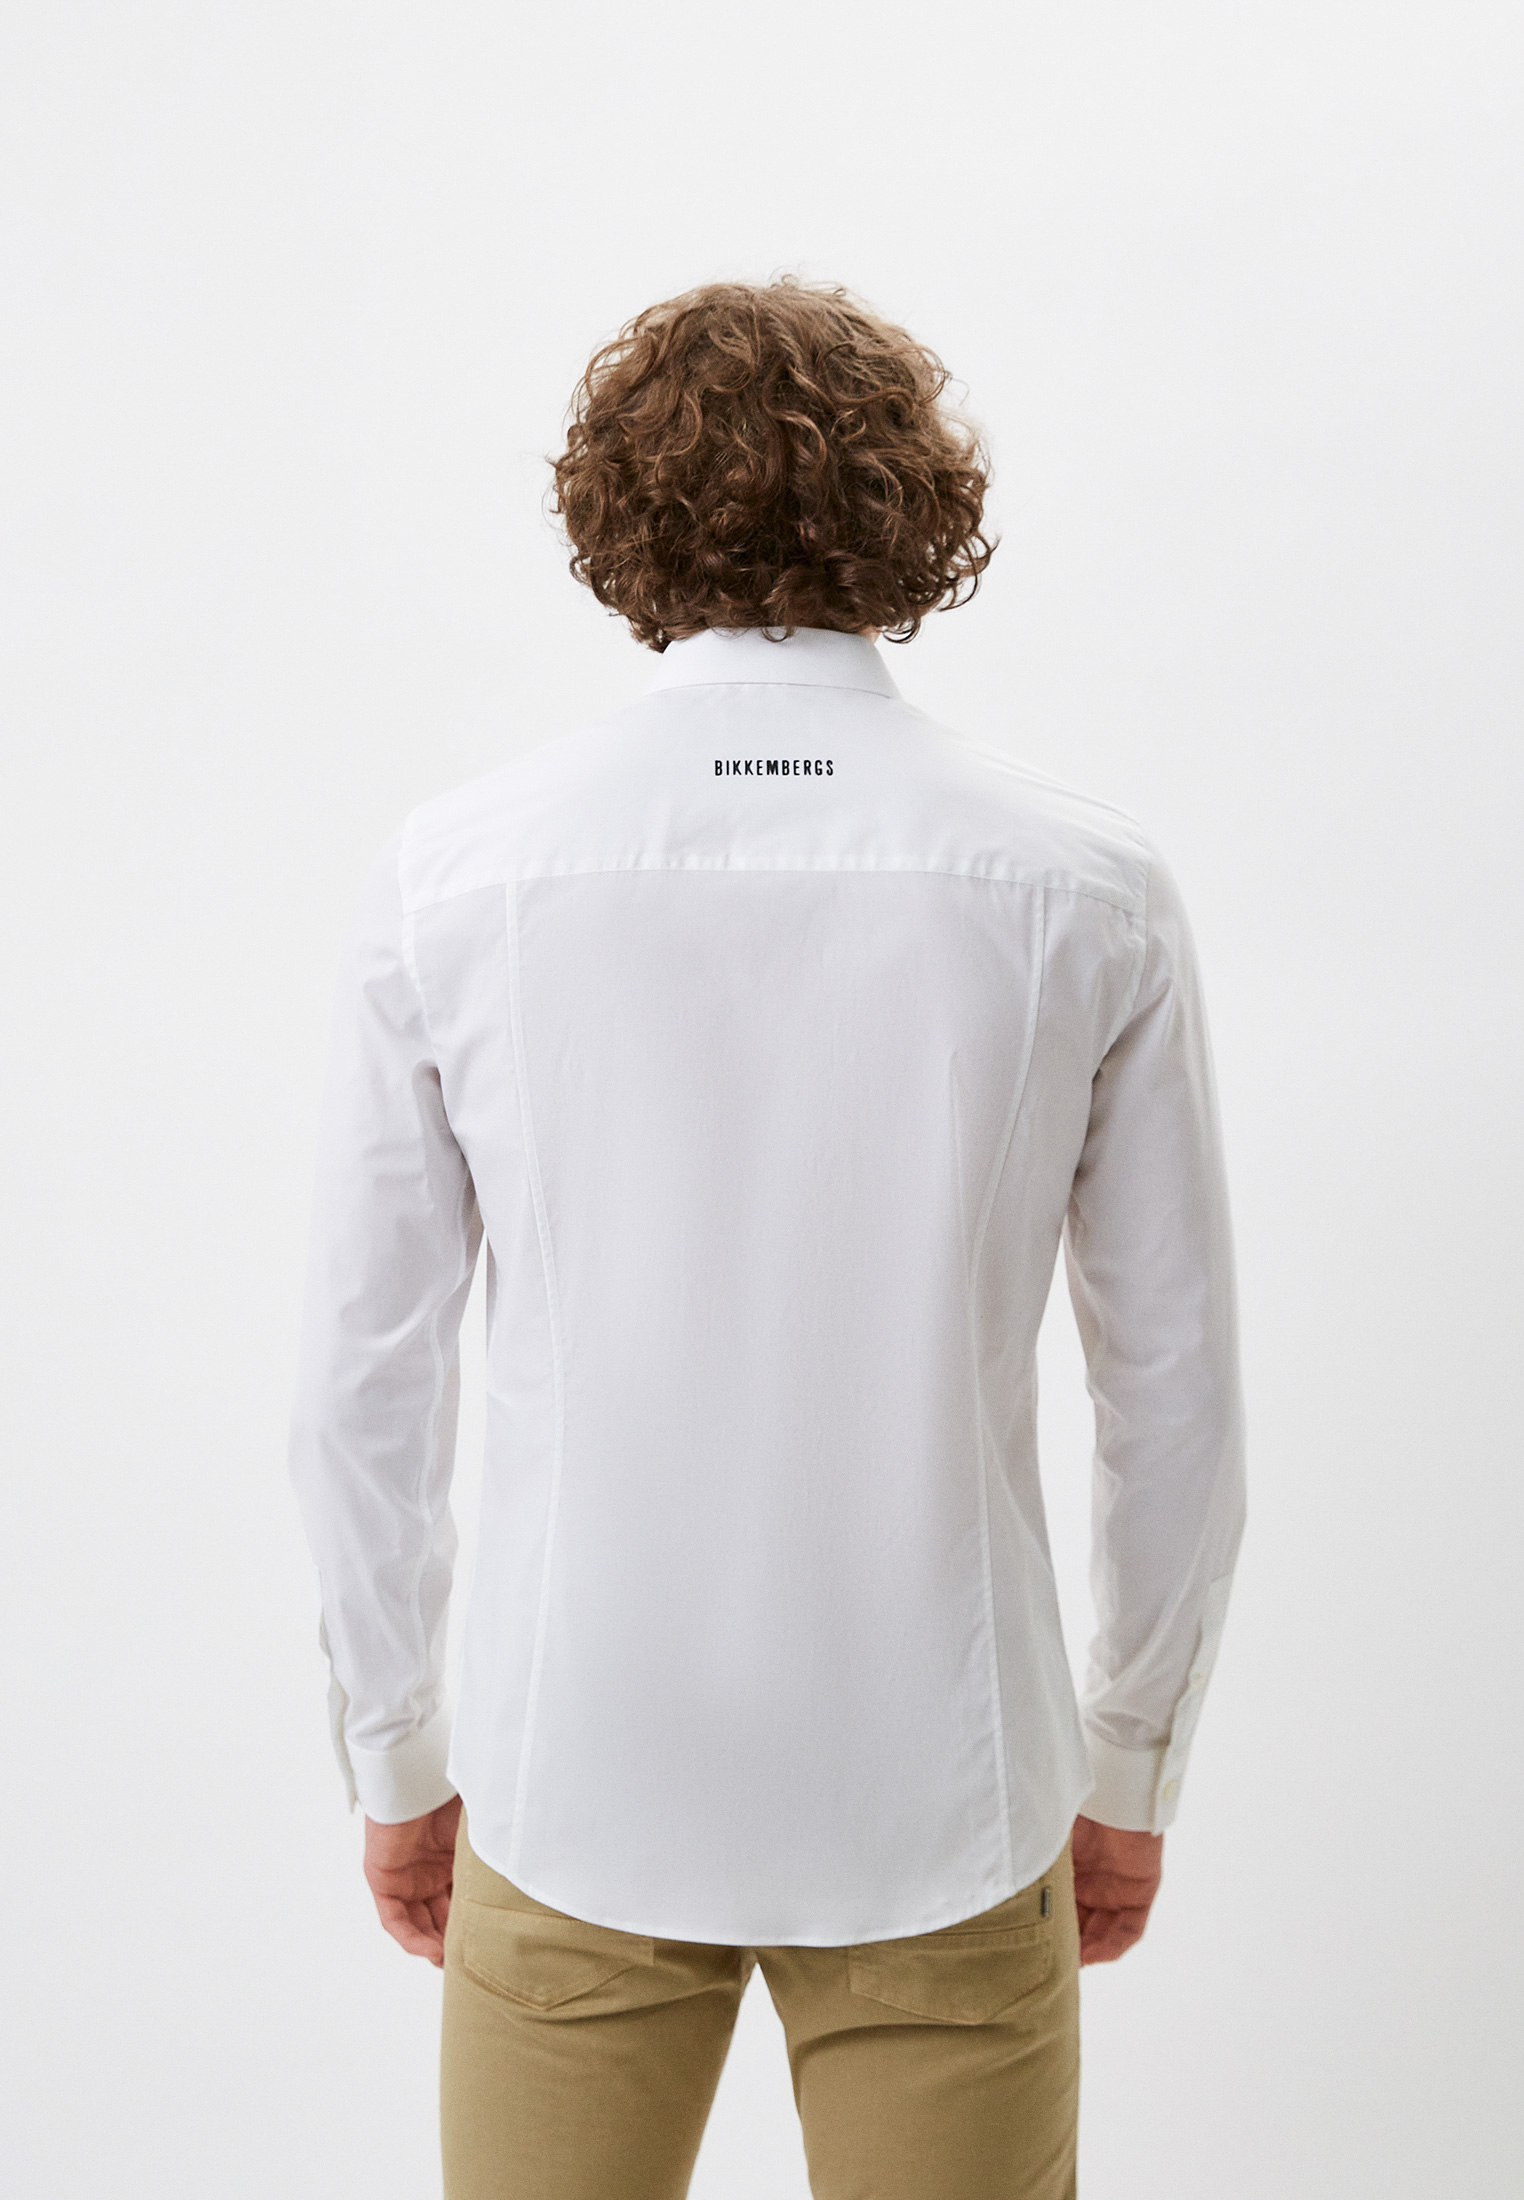 Рубашка с длинным рукавом Bikkembergs (Биккембергс) C C 009 05 S 2931: изображение 3